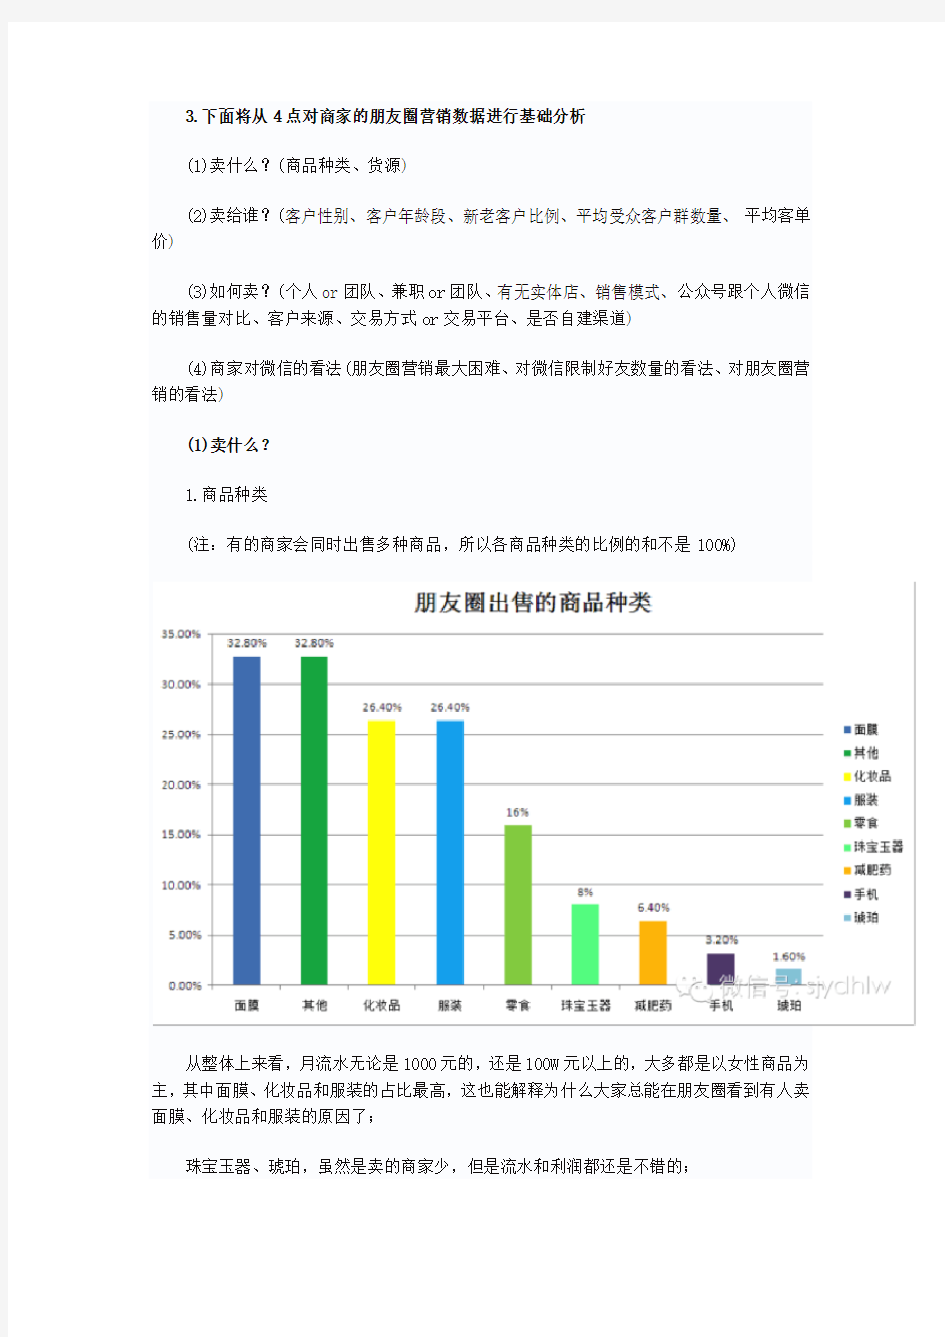 2014年“微信朋友圈营销”生态数据研究报告